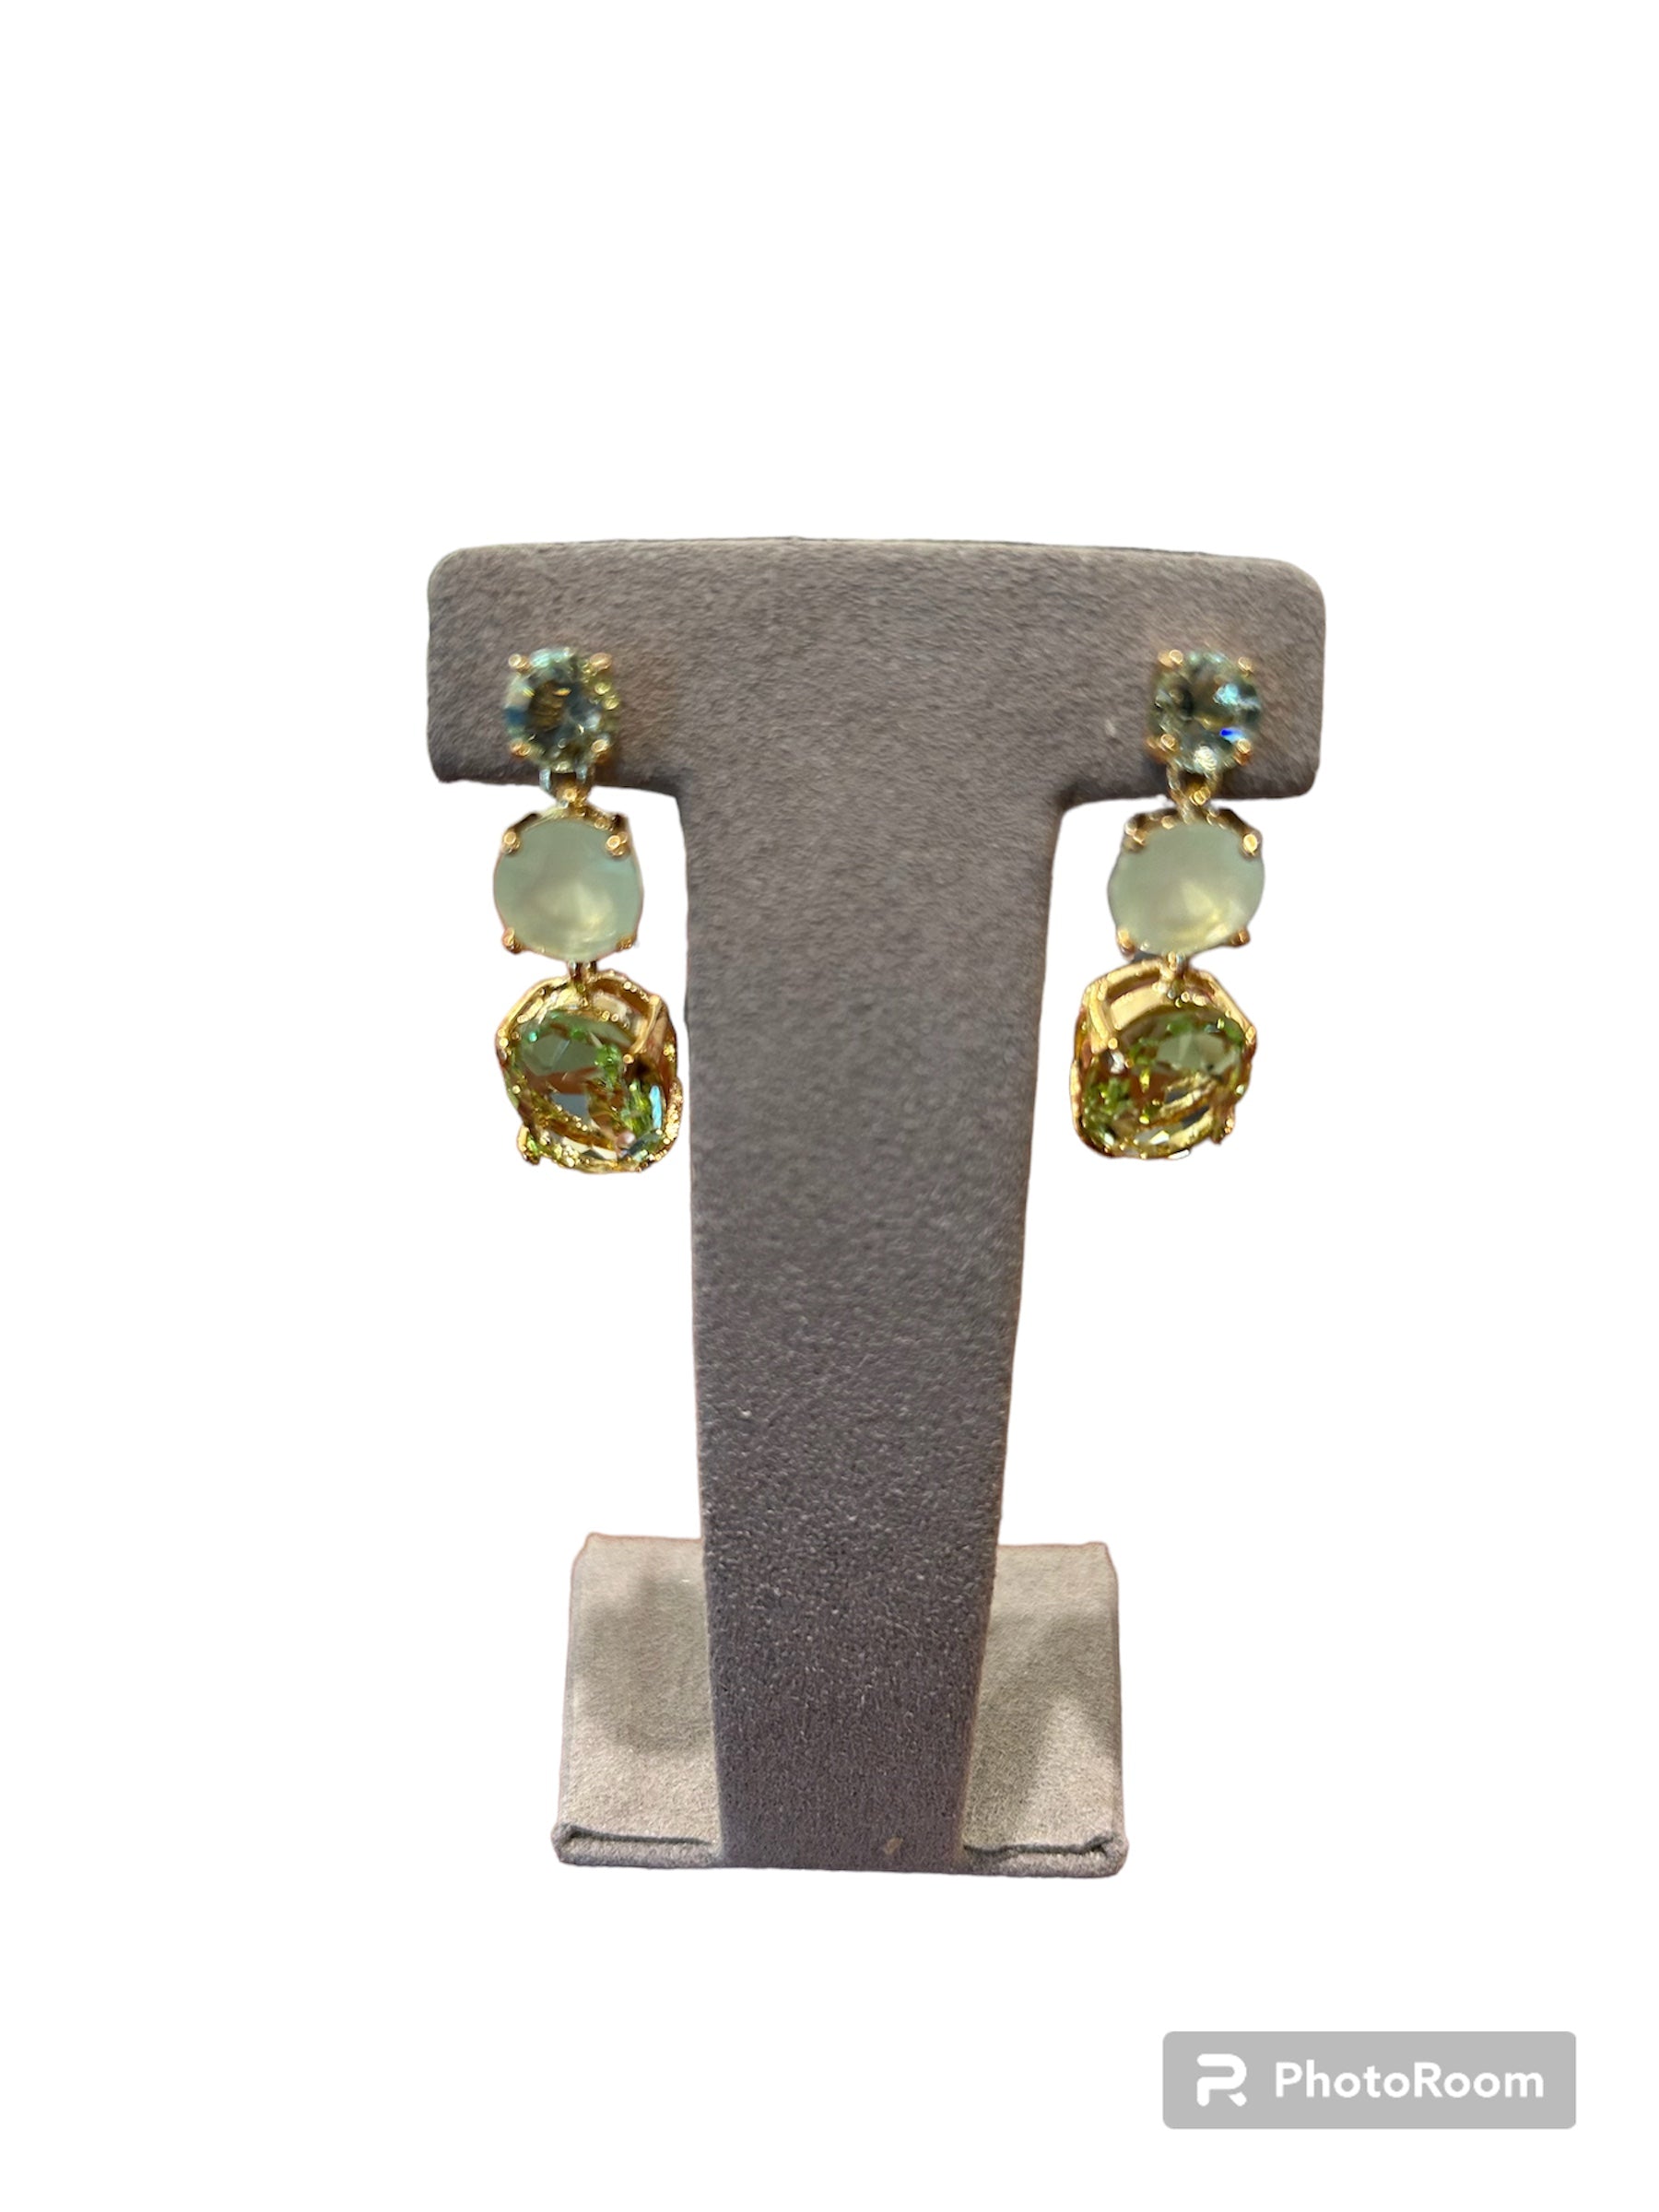 IL Mio Re - Boucles d'oreilles pendantes en bronze doré et pierres vertes - ILMIORE OR 062